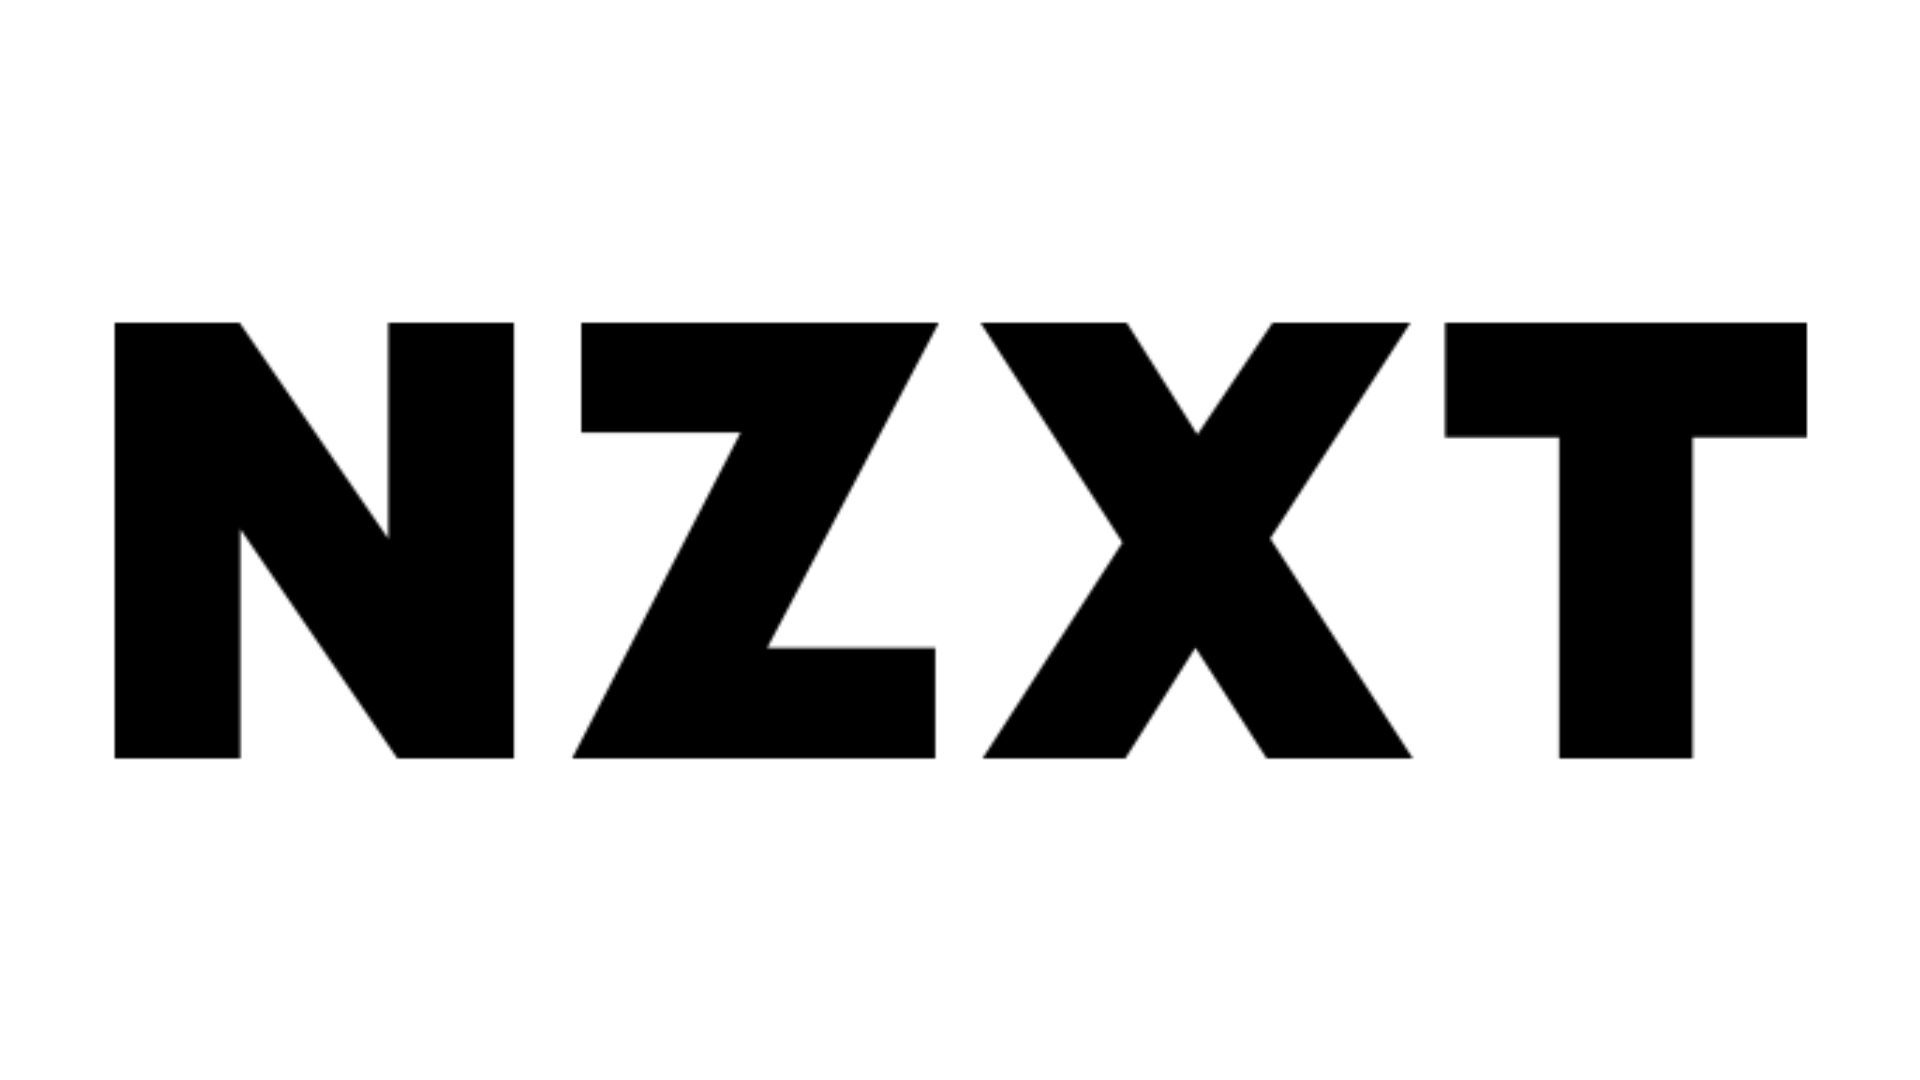 I migliori siti Web per build PC personalizzati, numero 2: NZXT. Il logo è su uno sfondo nero